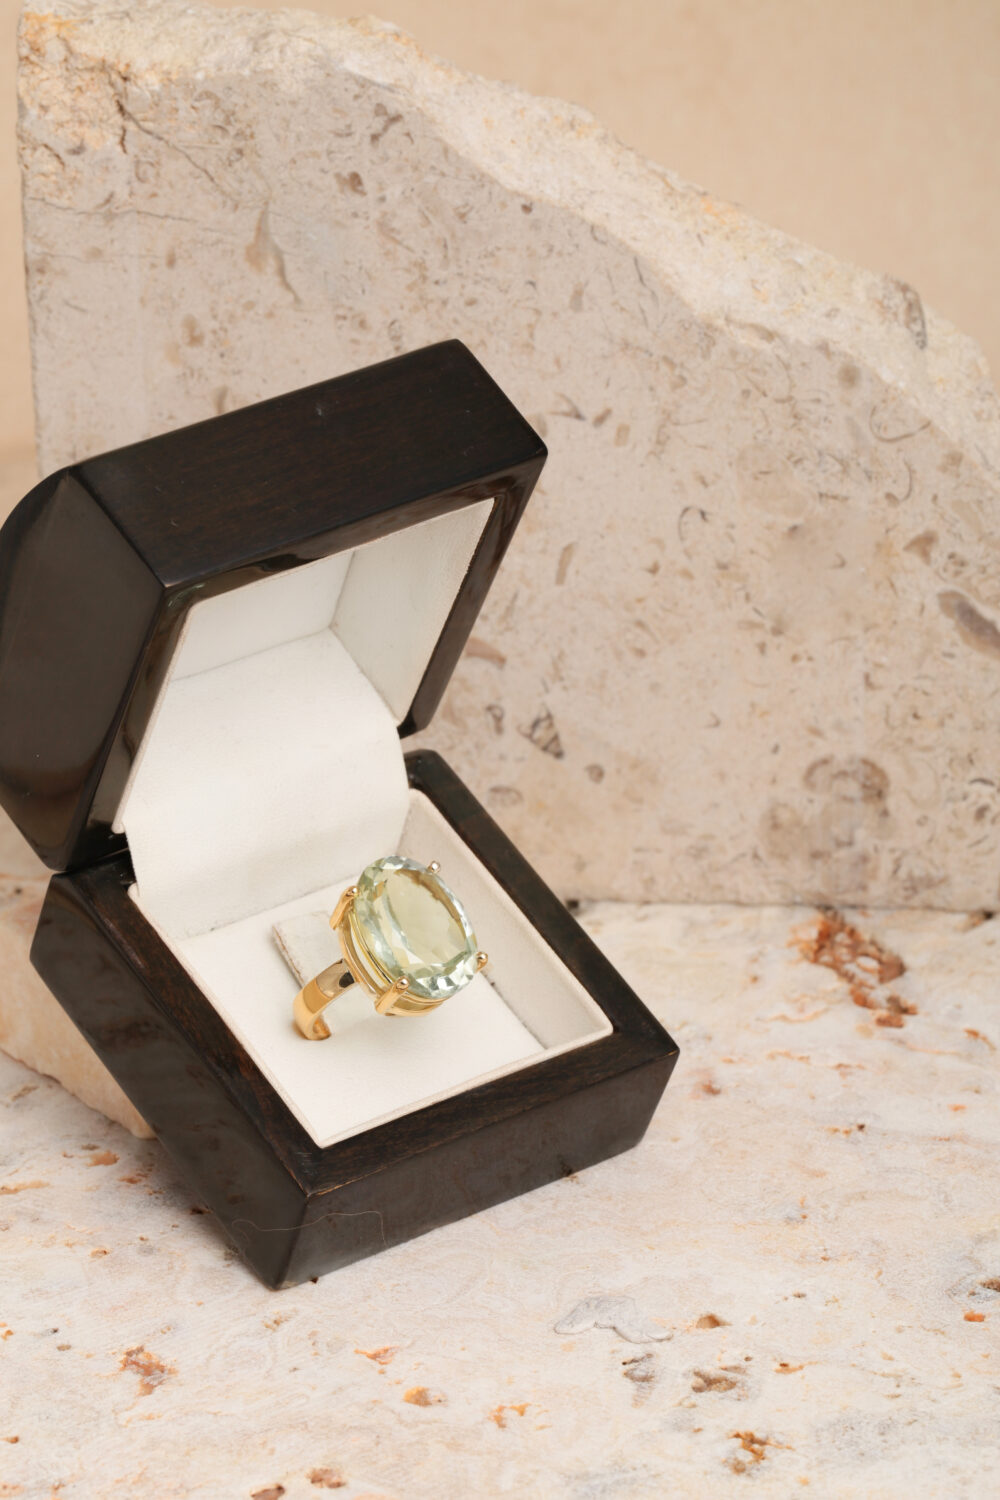 18-karaats geelgouden ring met een prasioliet edelsteen. Al onze sieraden worden met de hand gemaakt door juweelontwerpster Pascale Masselis in ons atelier in Antwerpen.